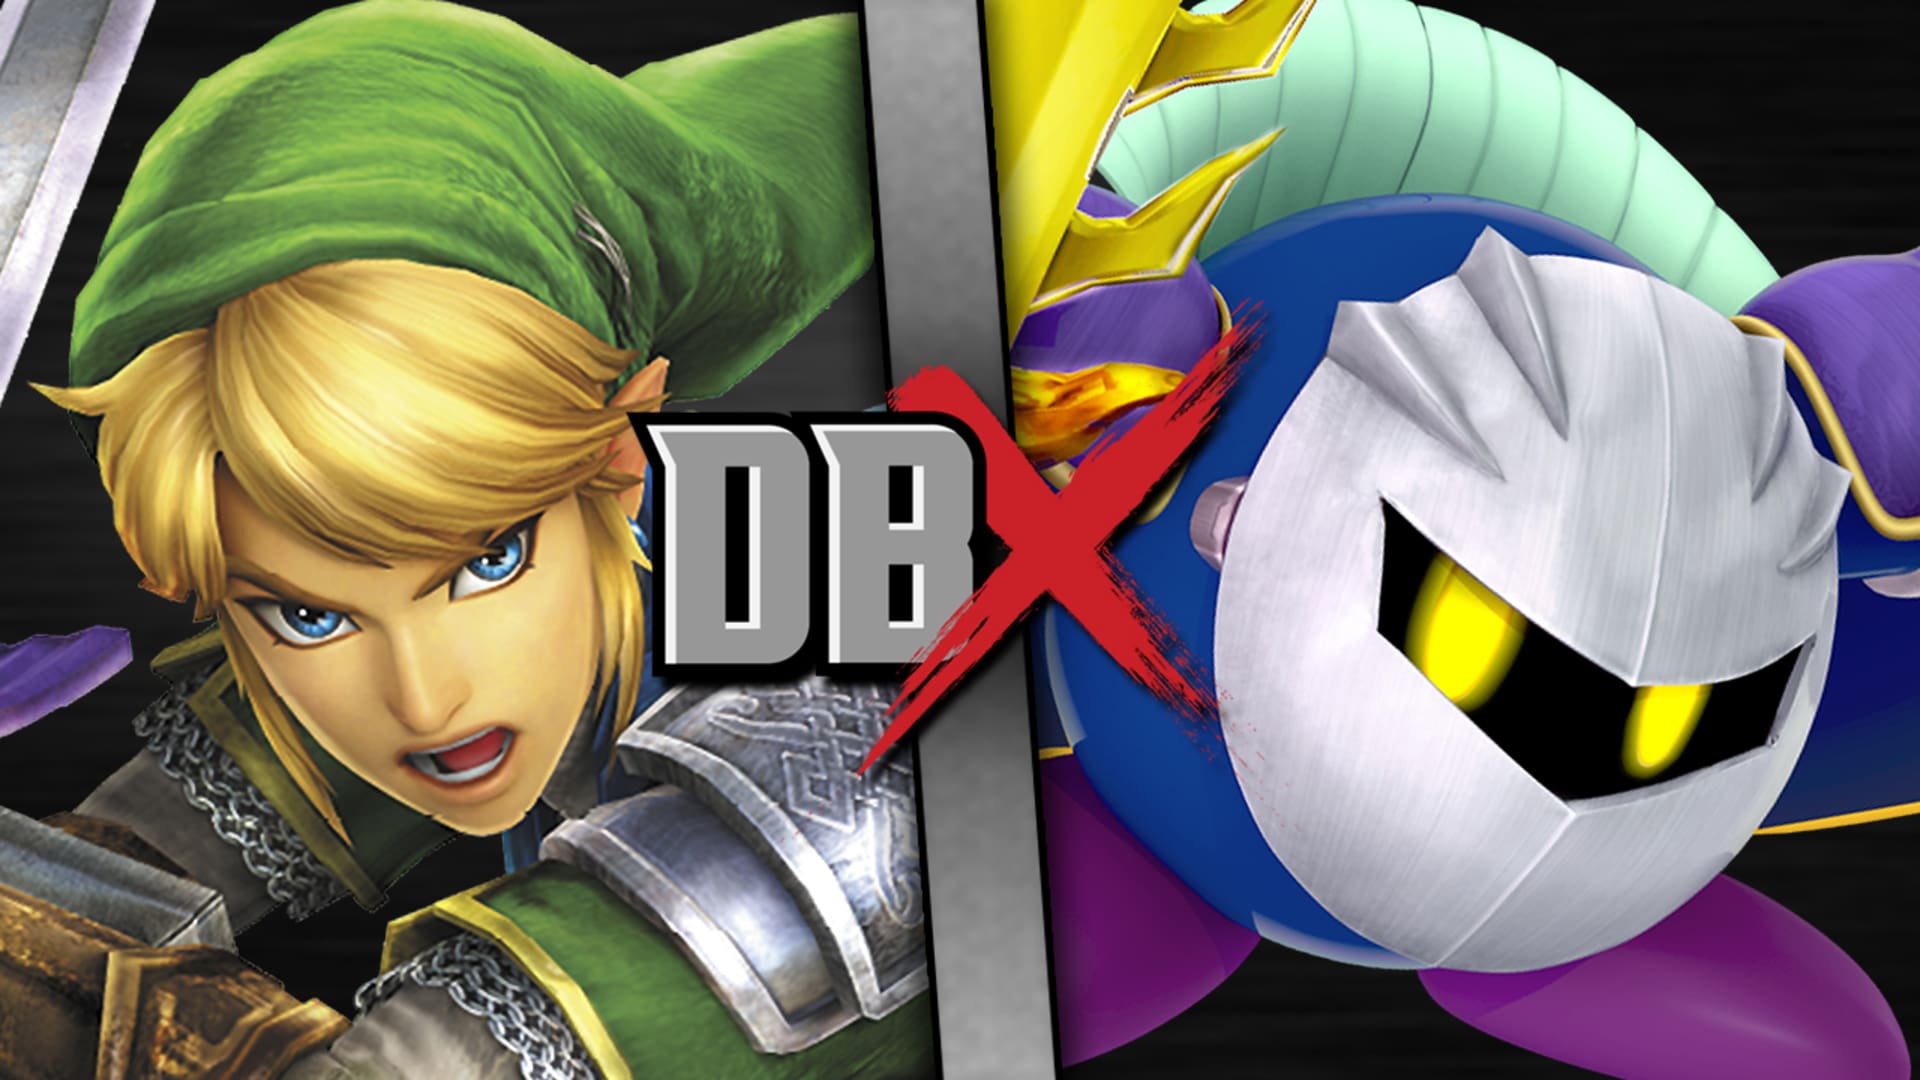 Link VS Meta Knight (Legend of Zelda VS Kirby) - Rooster Teeth